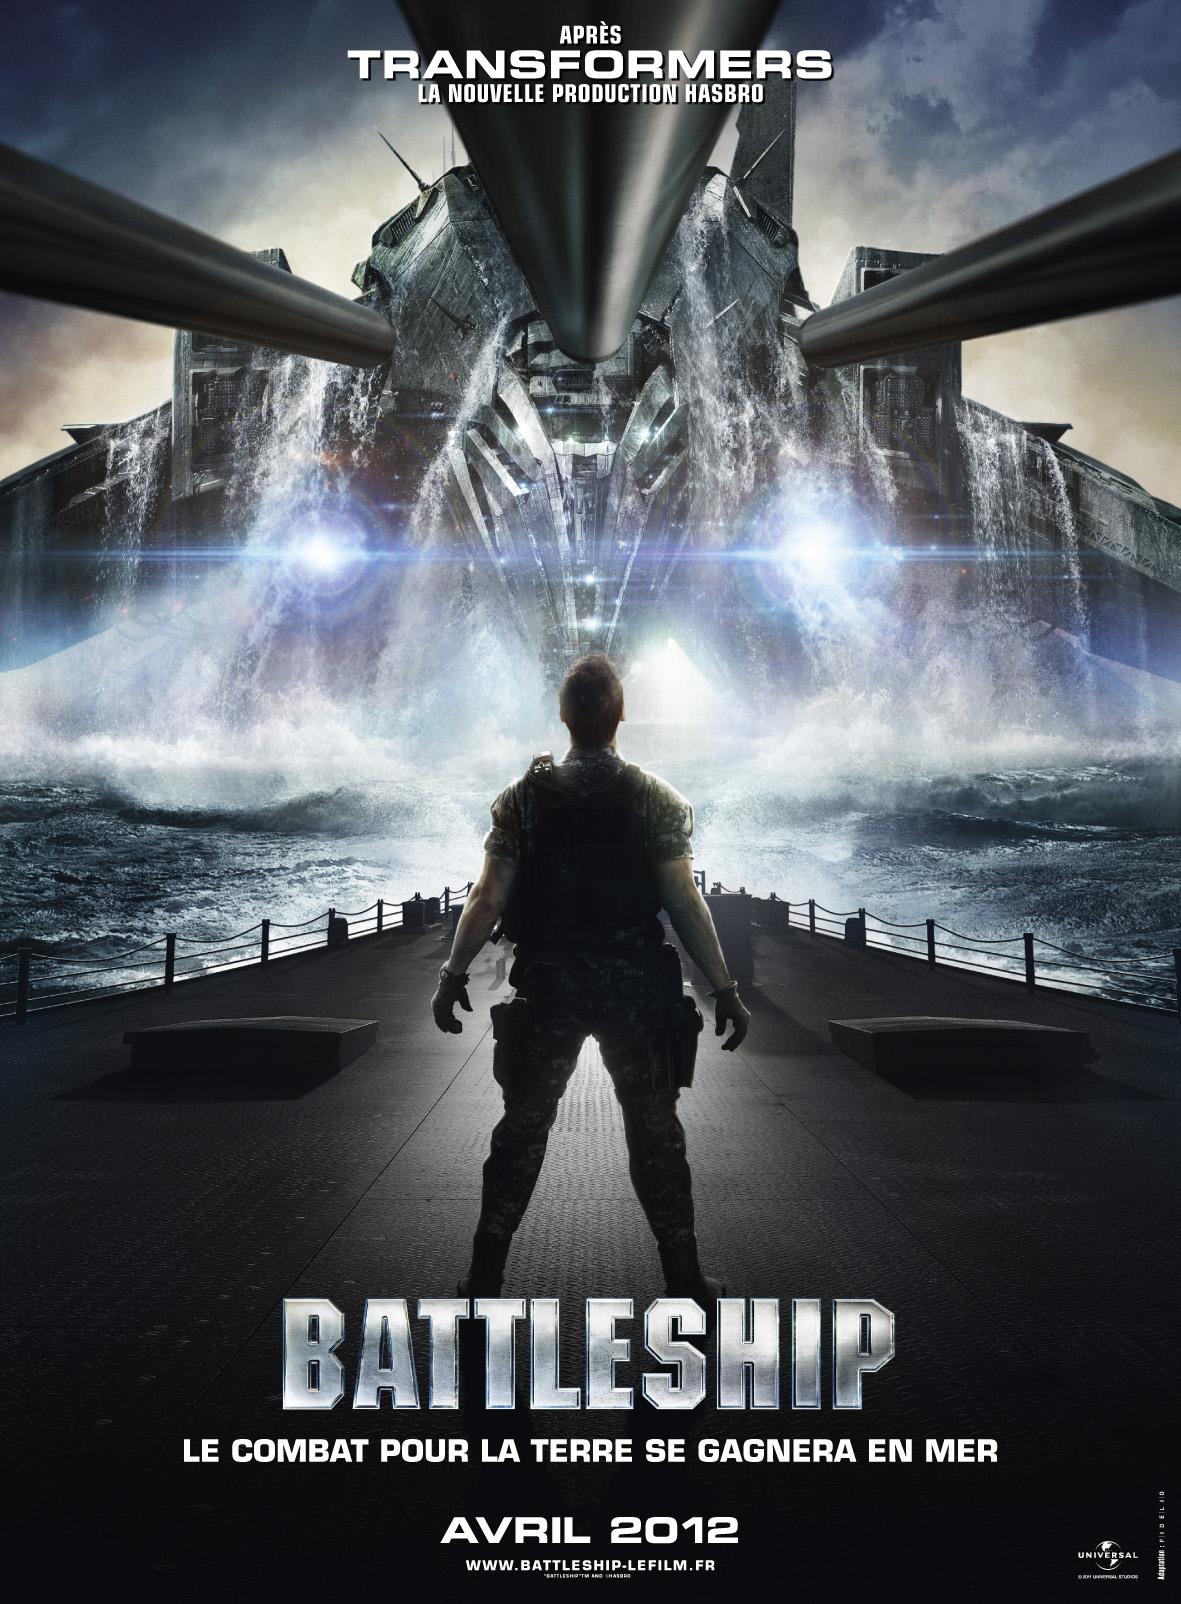 Bande-Annonce: Battleship, le film sort ce mercredi sur nos grands écrans